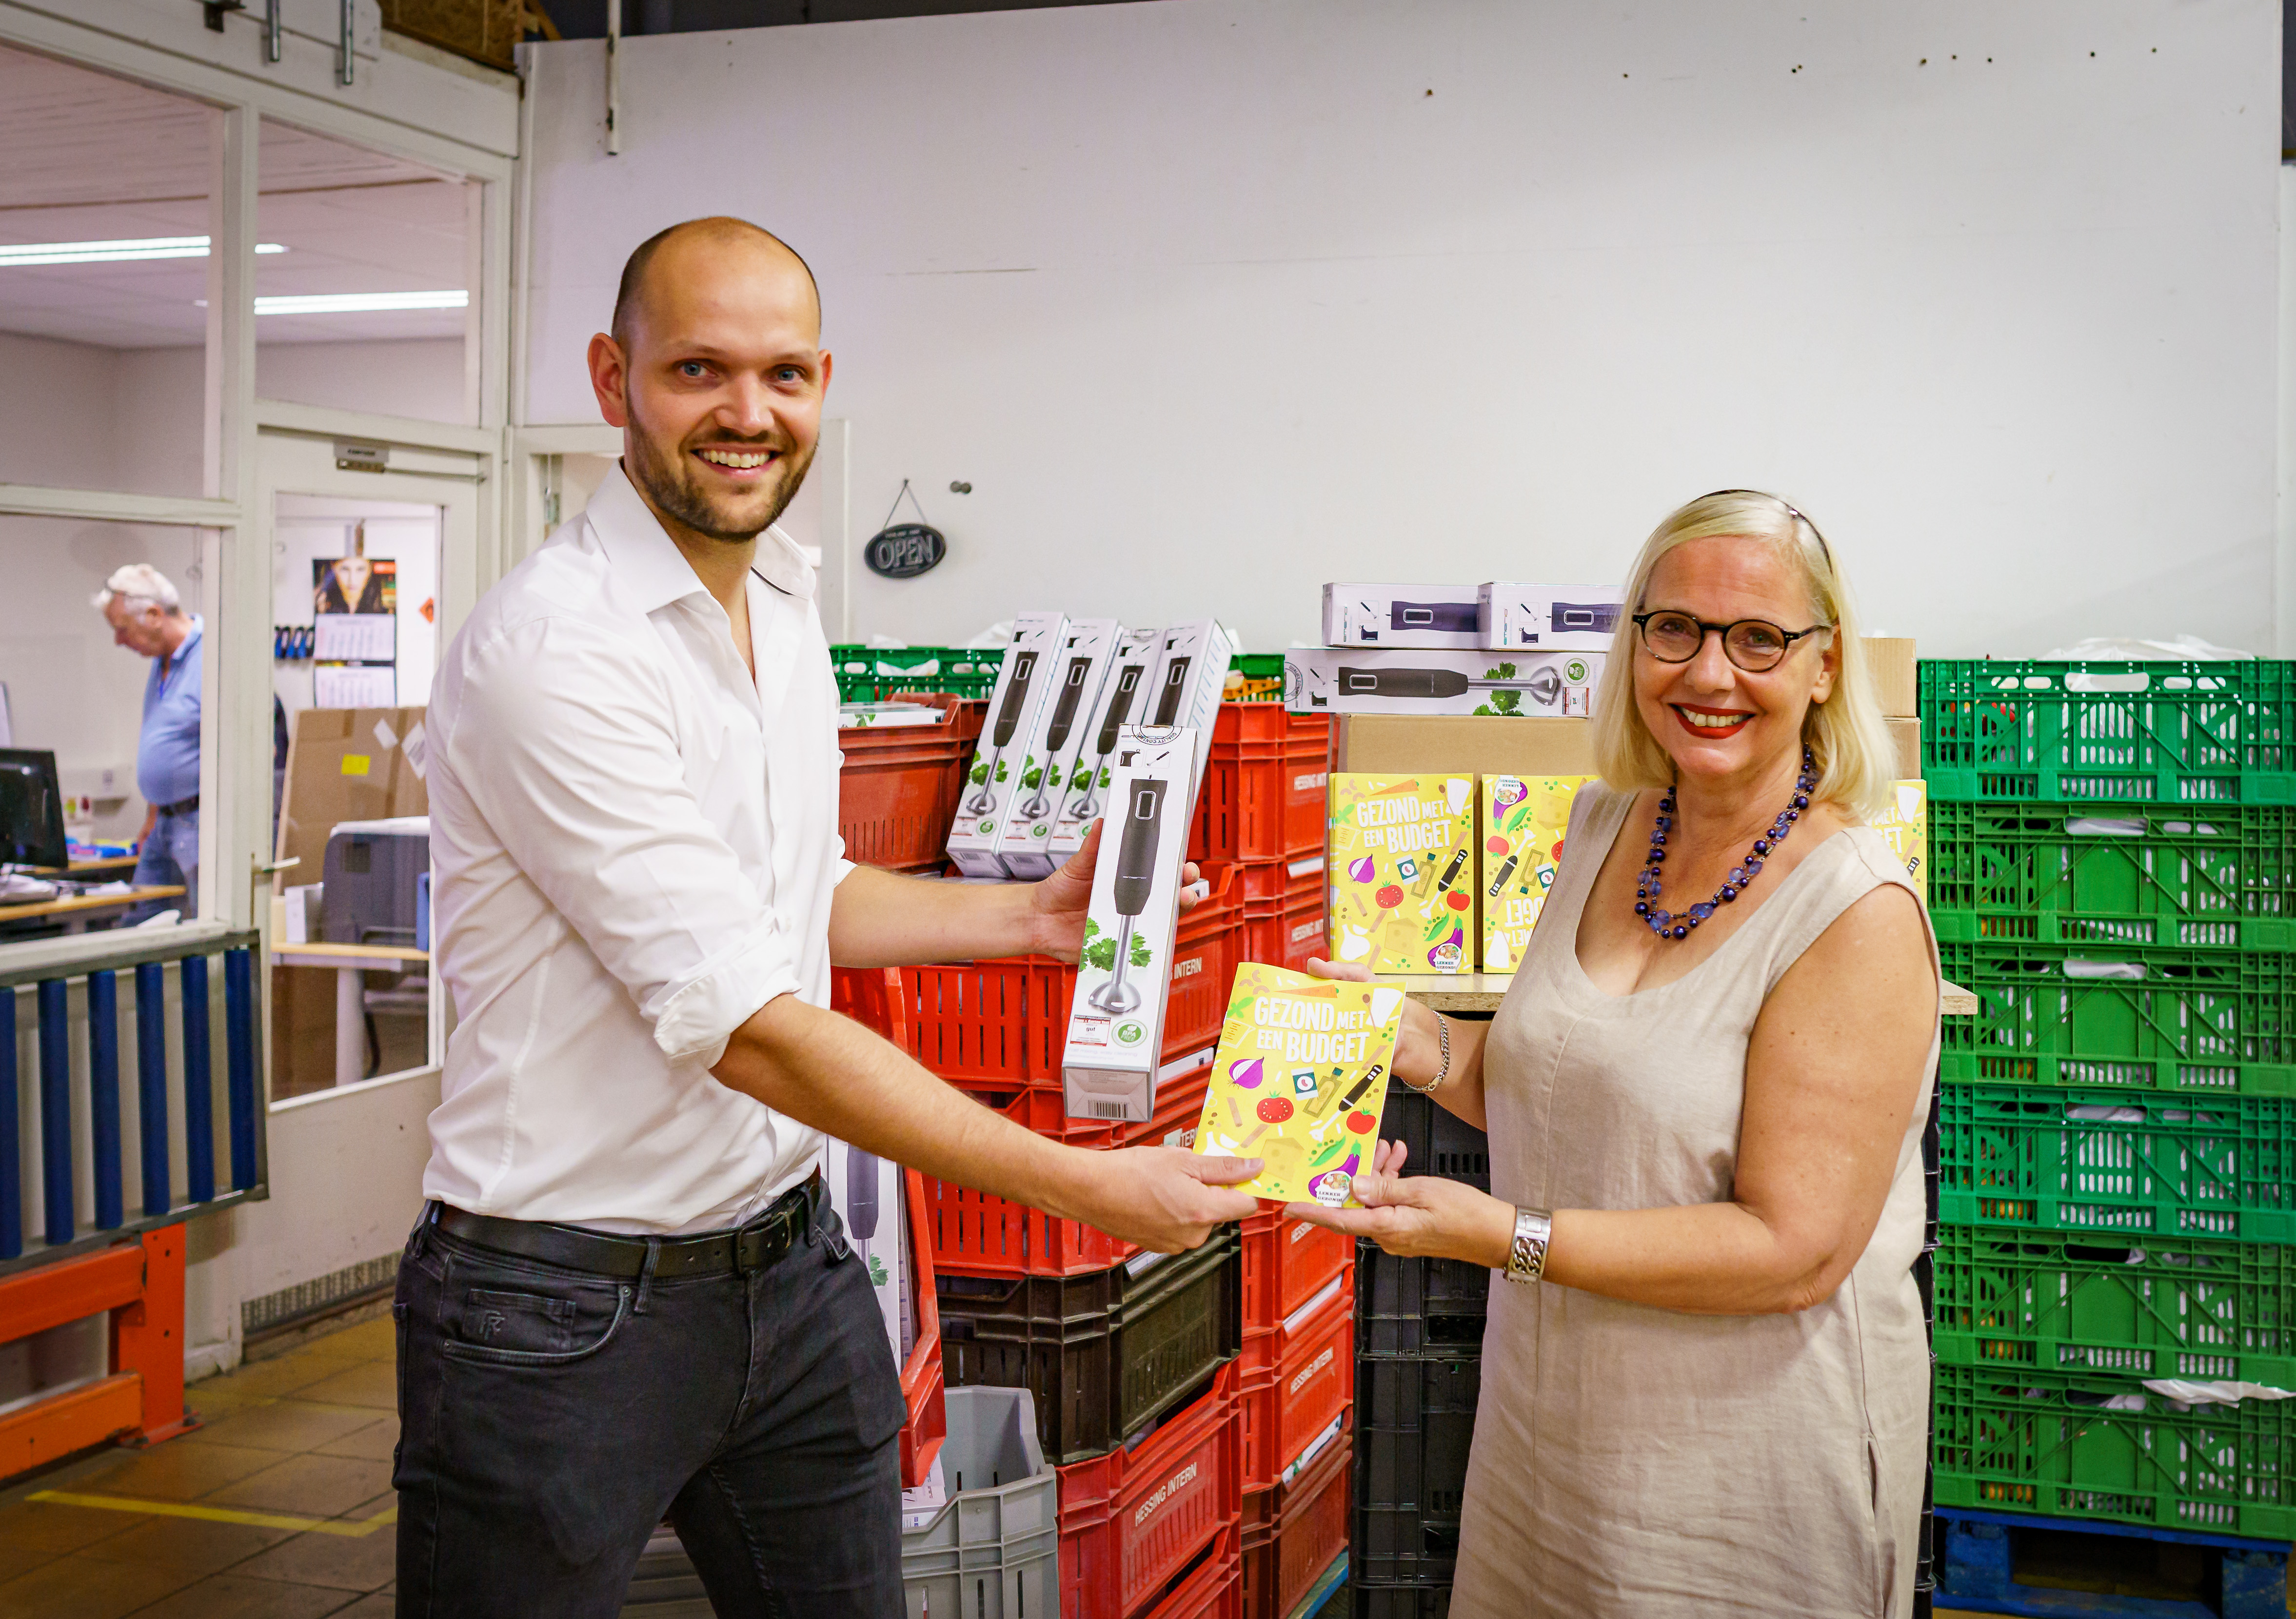 Wethouder Wouter Struijk en Dini Bonninga met boek 'Gezond met een budget' en staafmixer in handen 